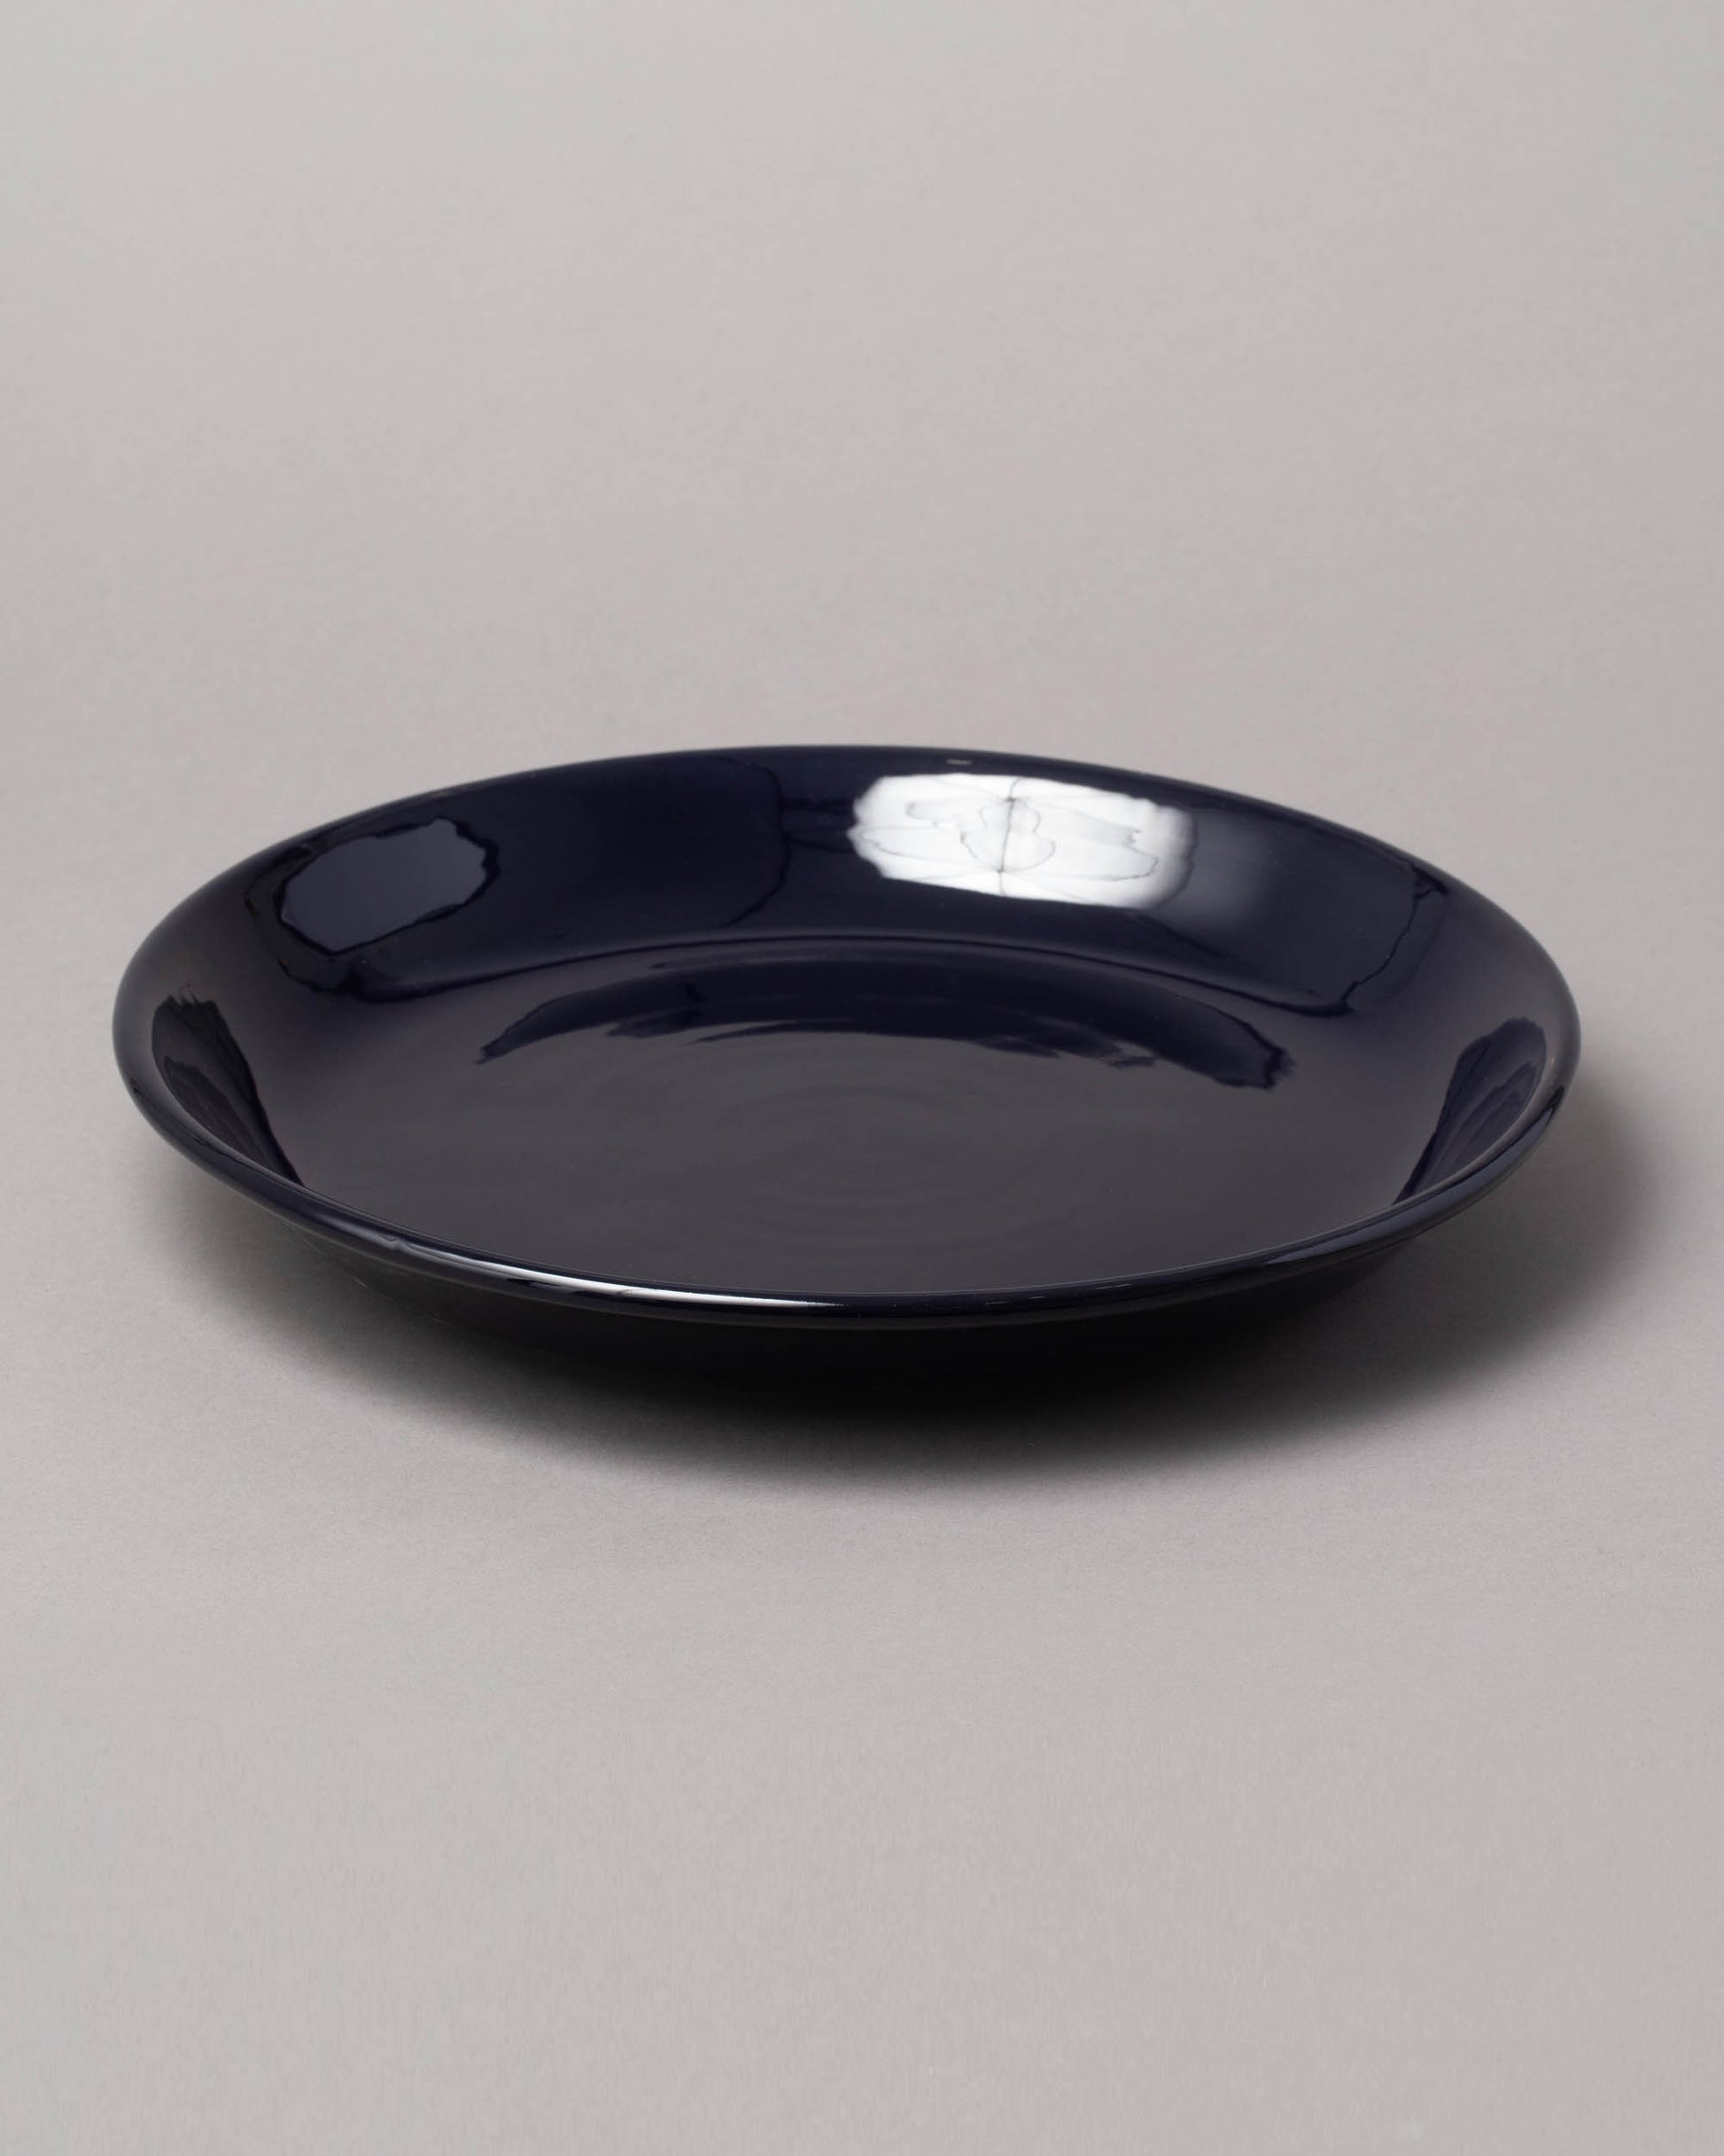 La Ceramica Vincenzo Del Monaco Midnight Circular Serving Dish on light color background.